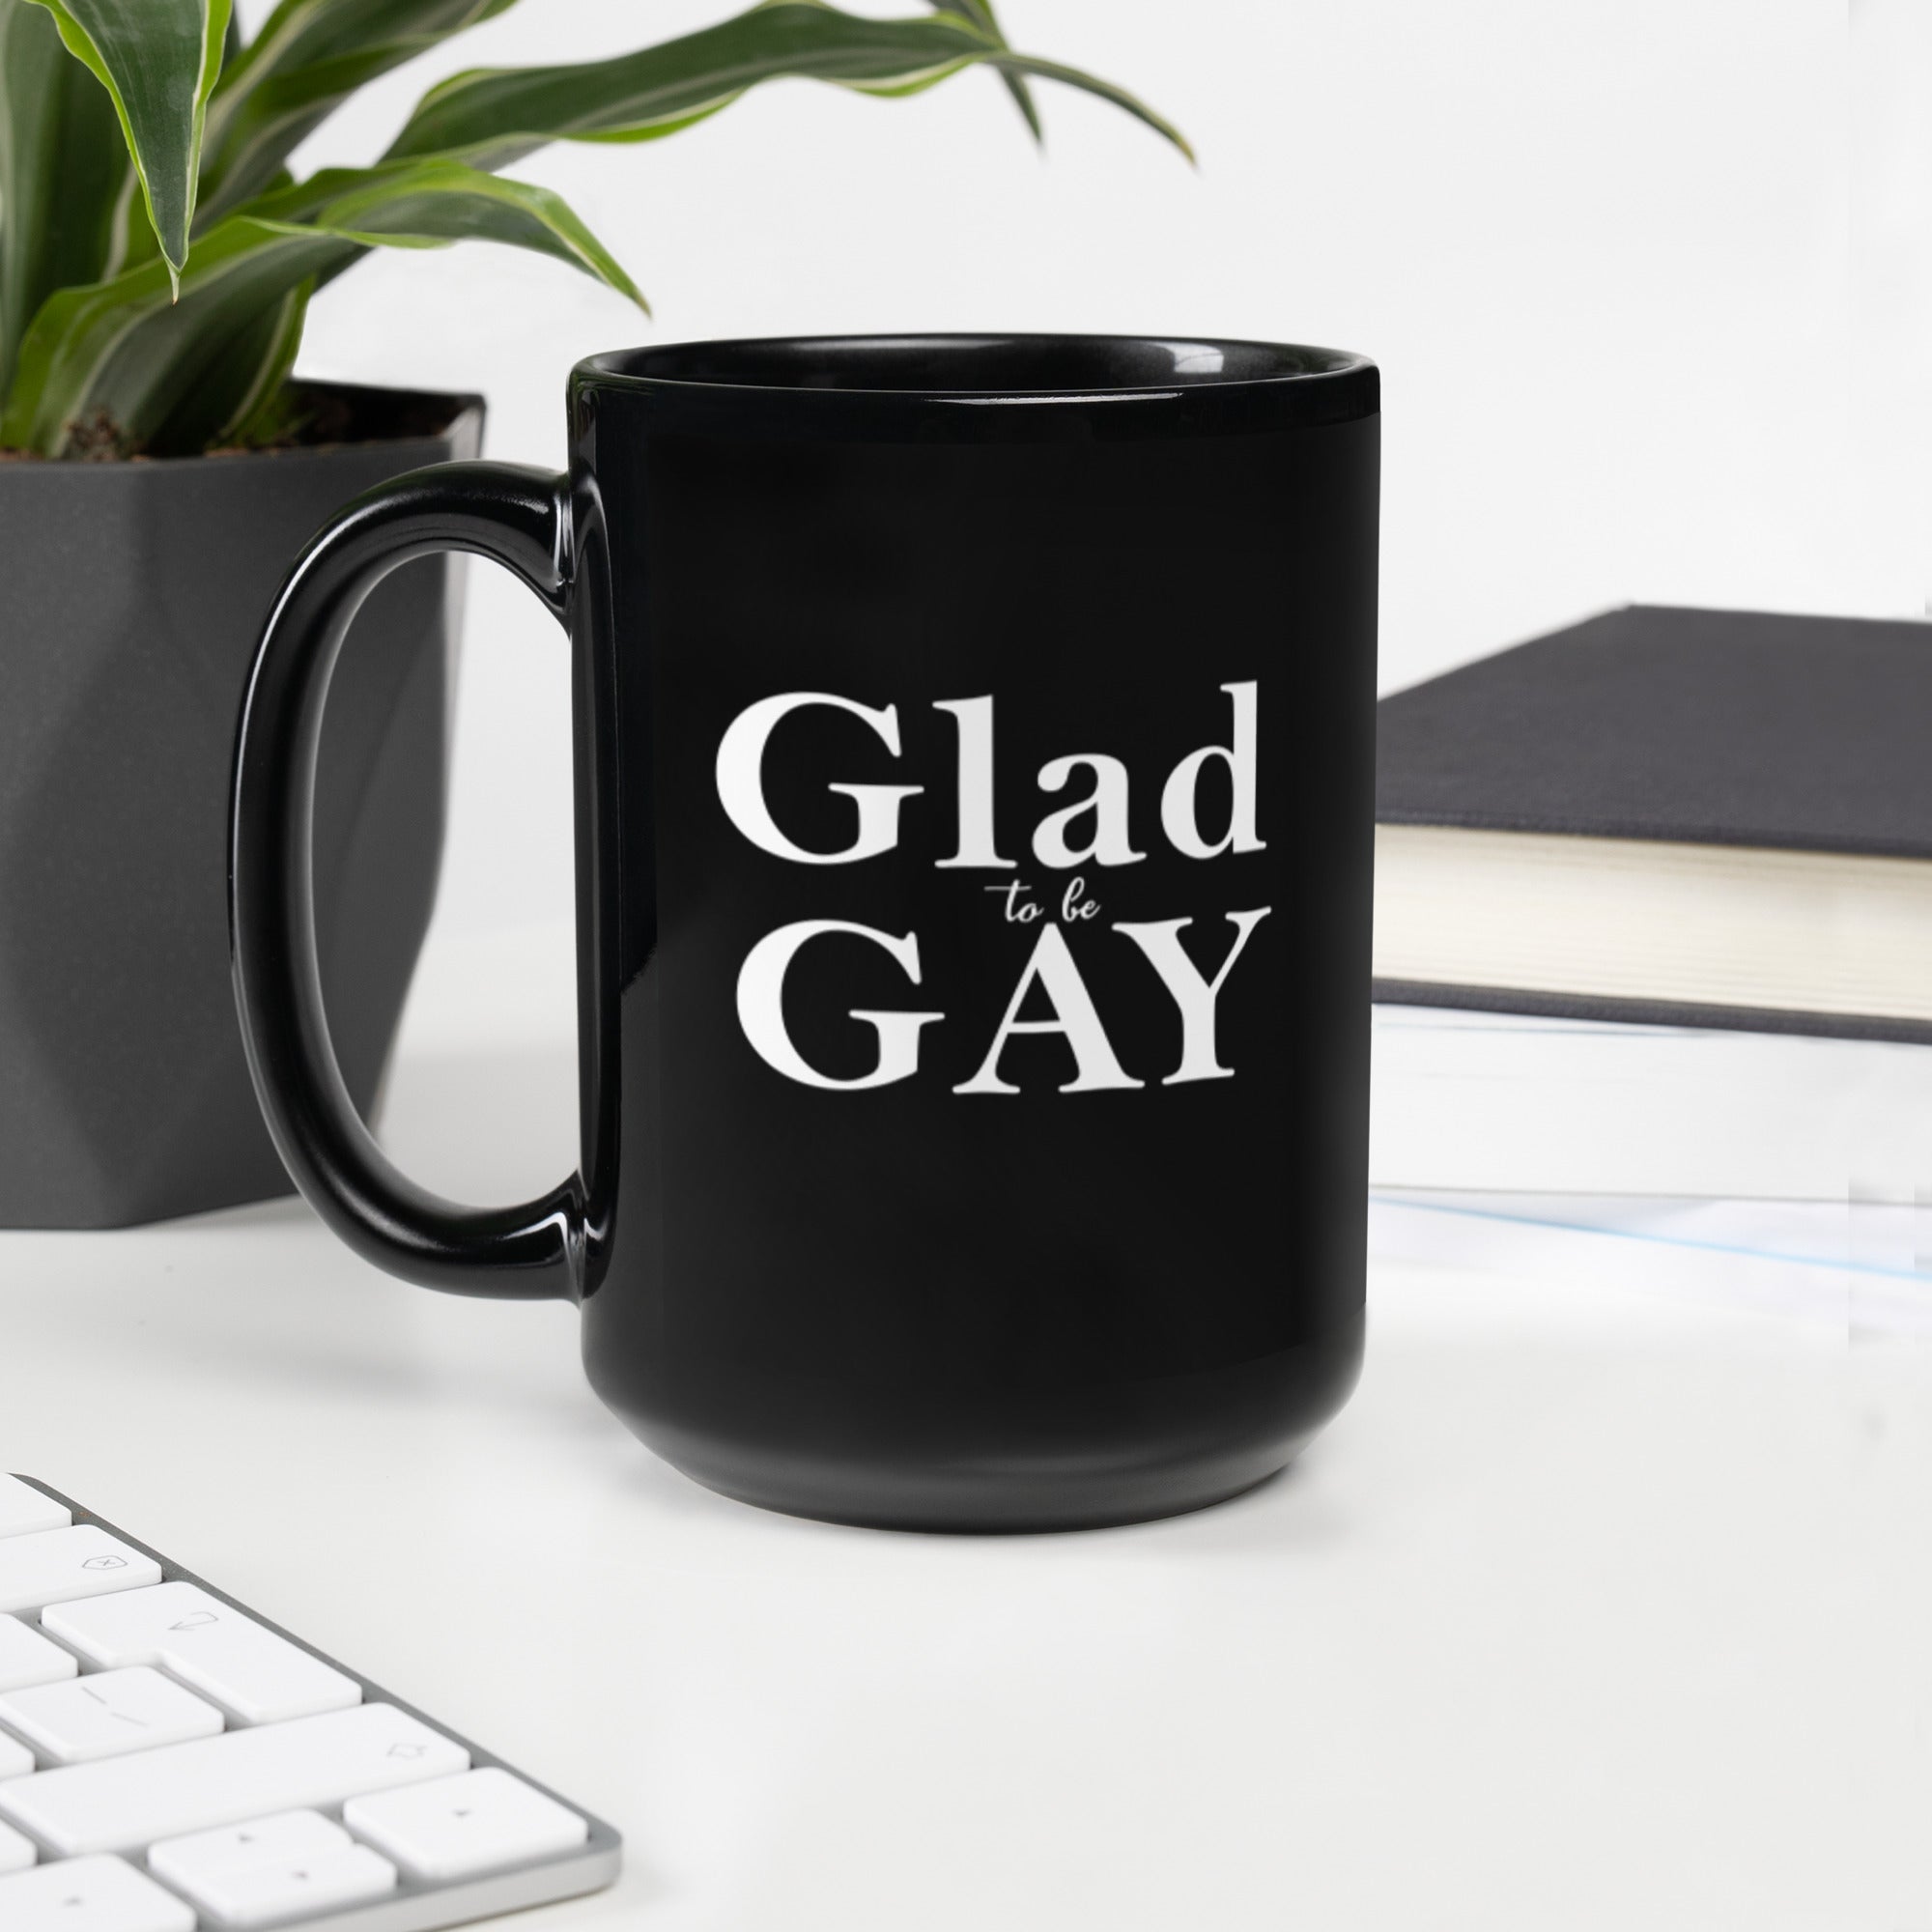 Glad to be Gay - Beautiful - Black Glossy Mug